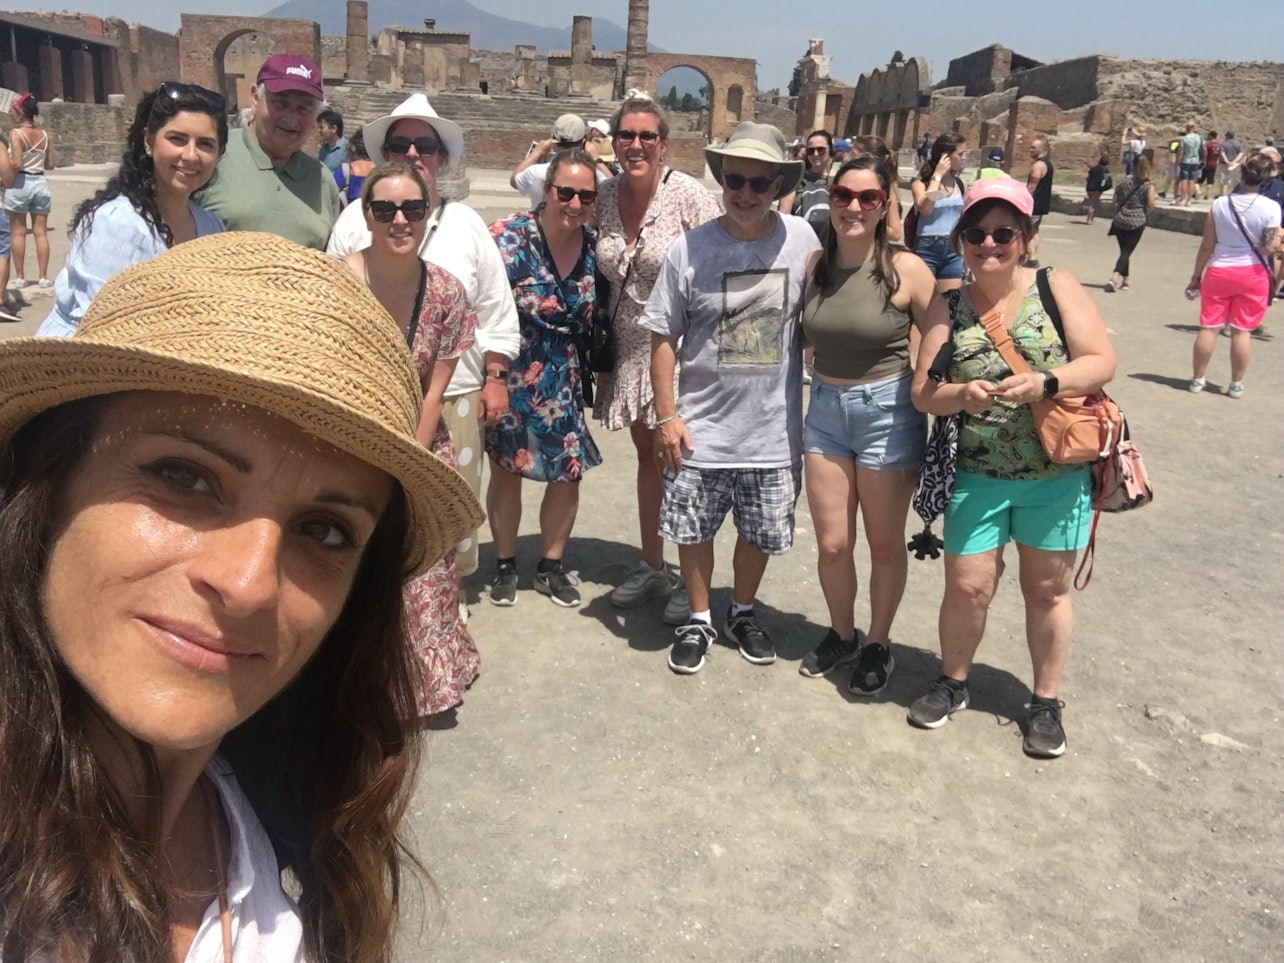 Pompeya: Visita guiada con tren de alta velocidad desde/hasta Roma + Almuerzo - Alojamientos en Roma